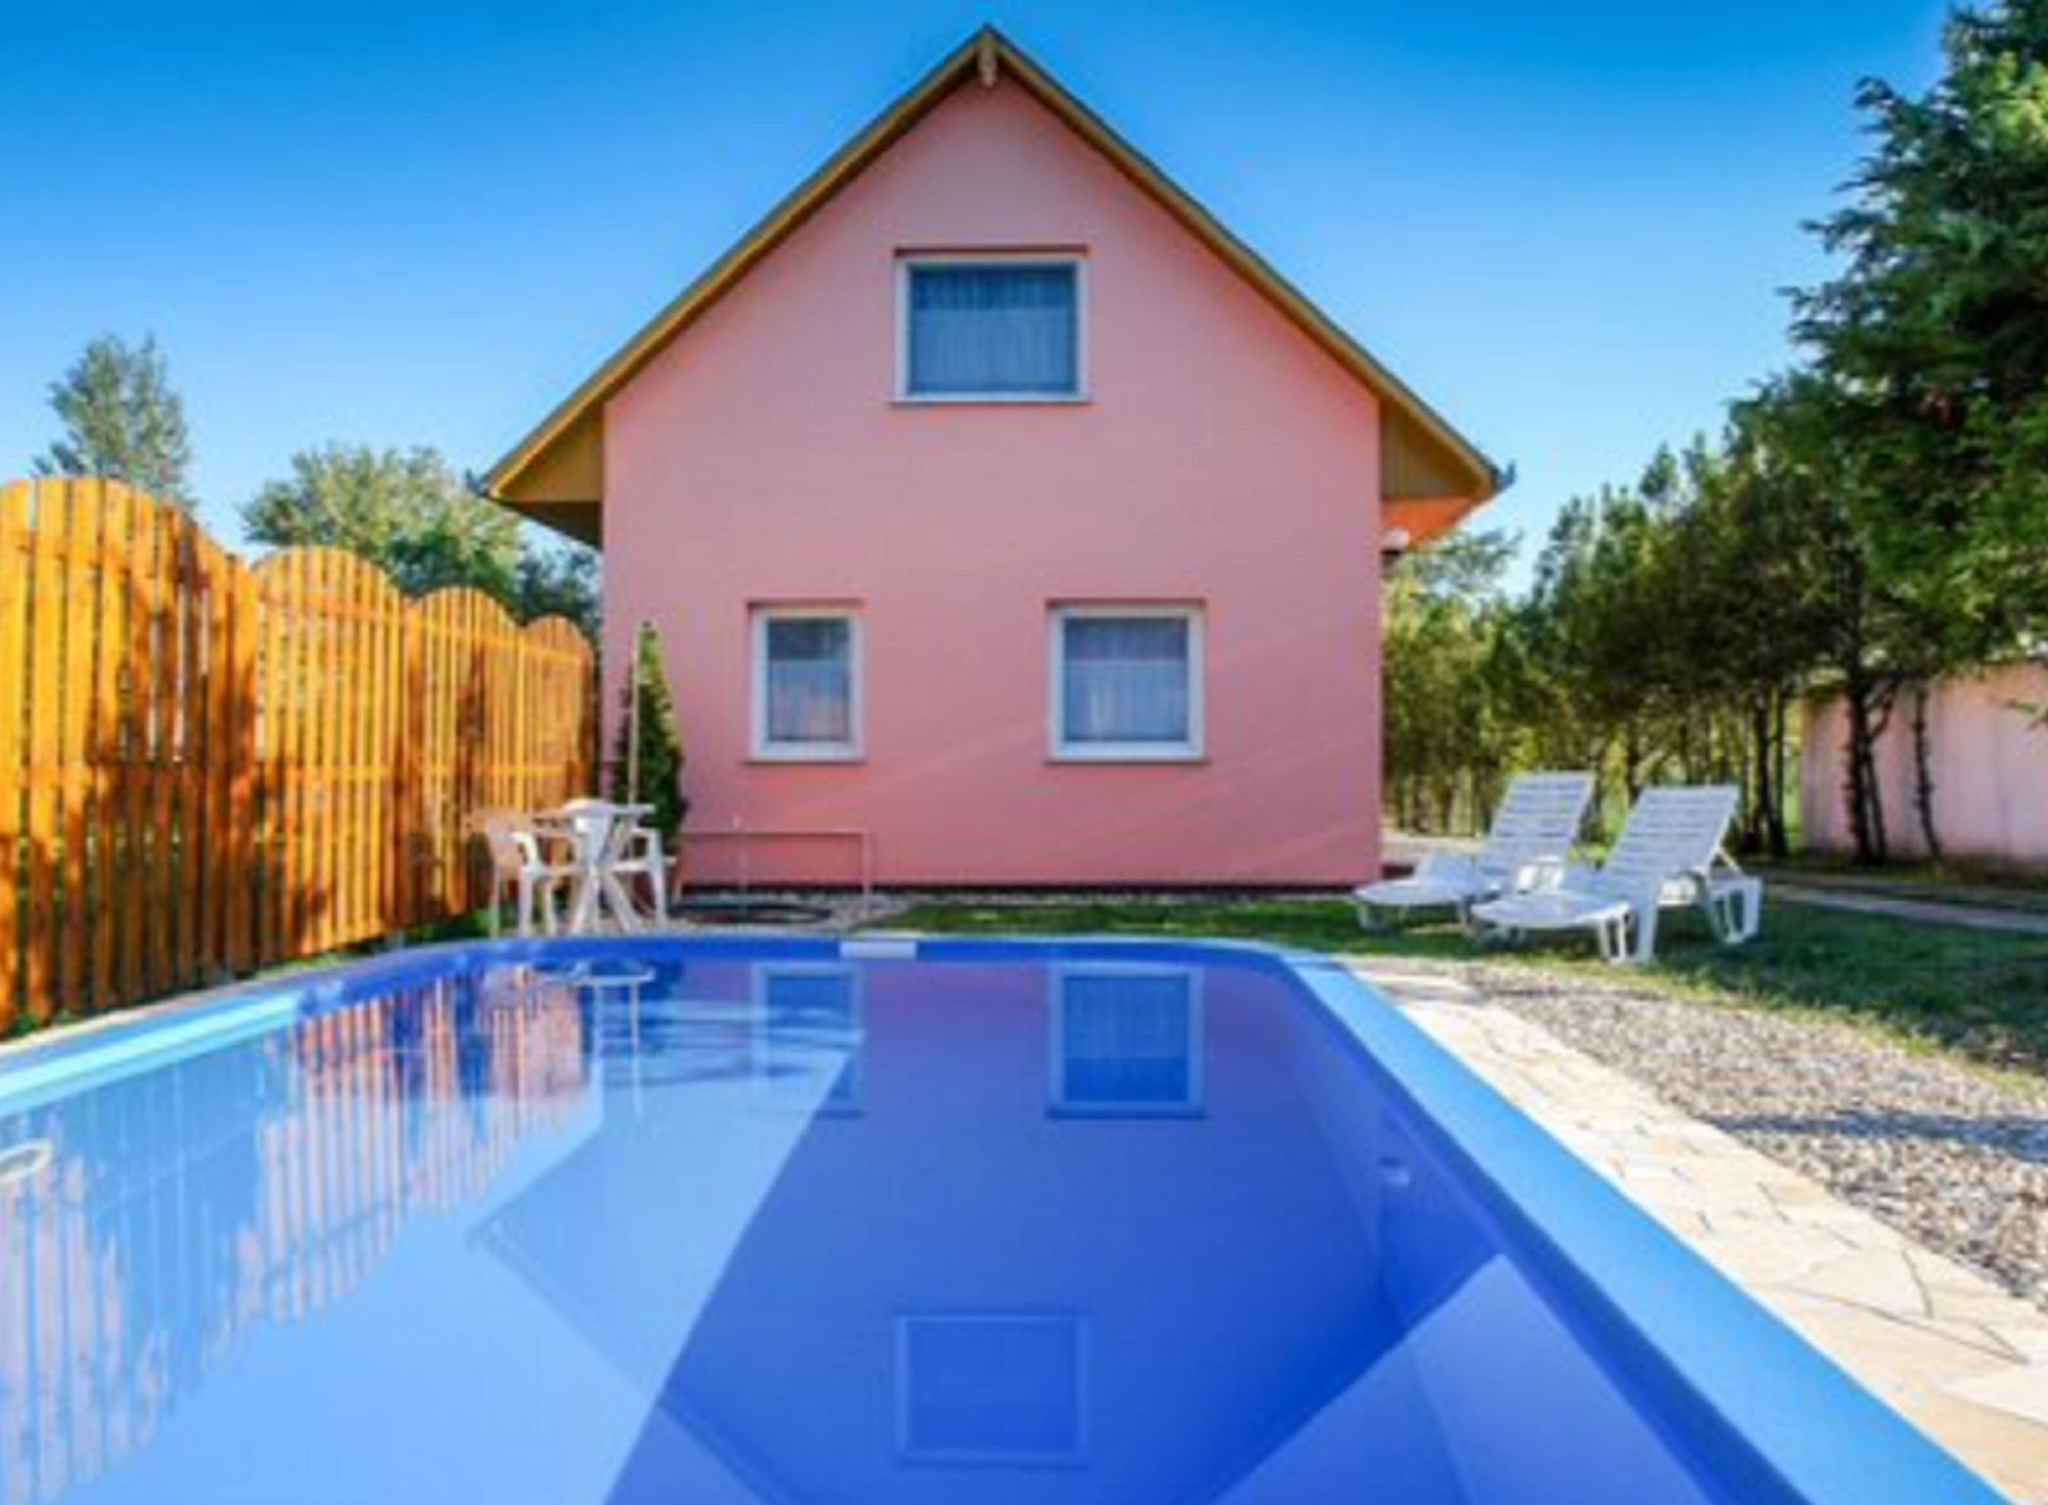 Ferienhaus mit Pool und Gartenpavillon  in Europa